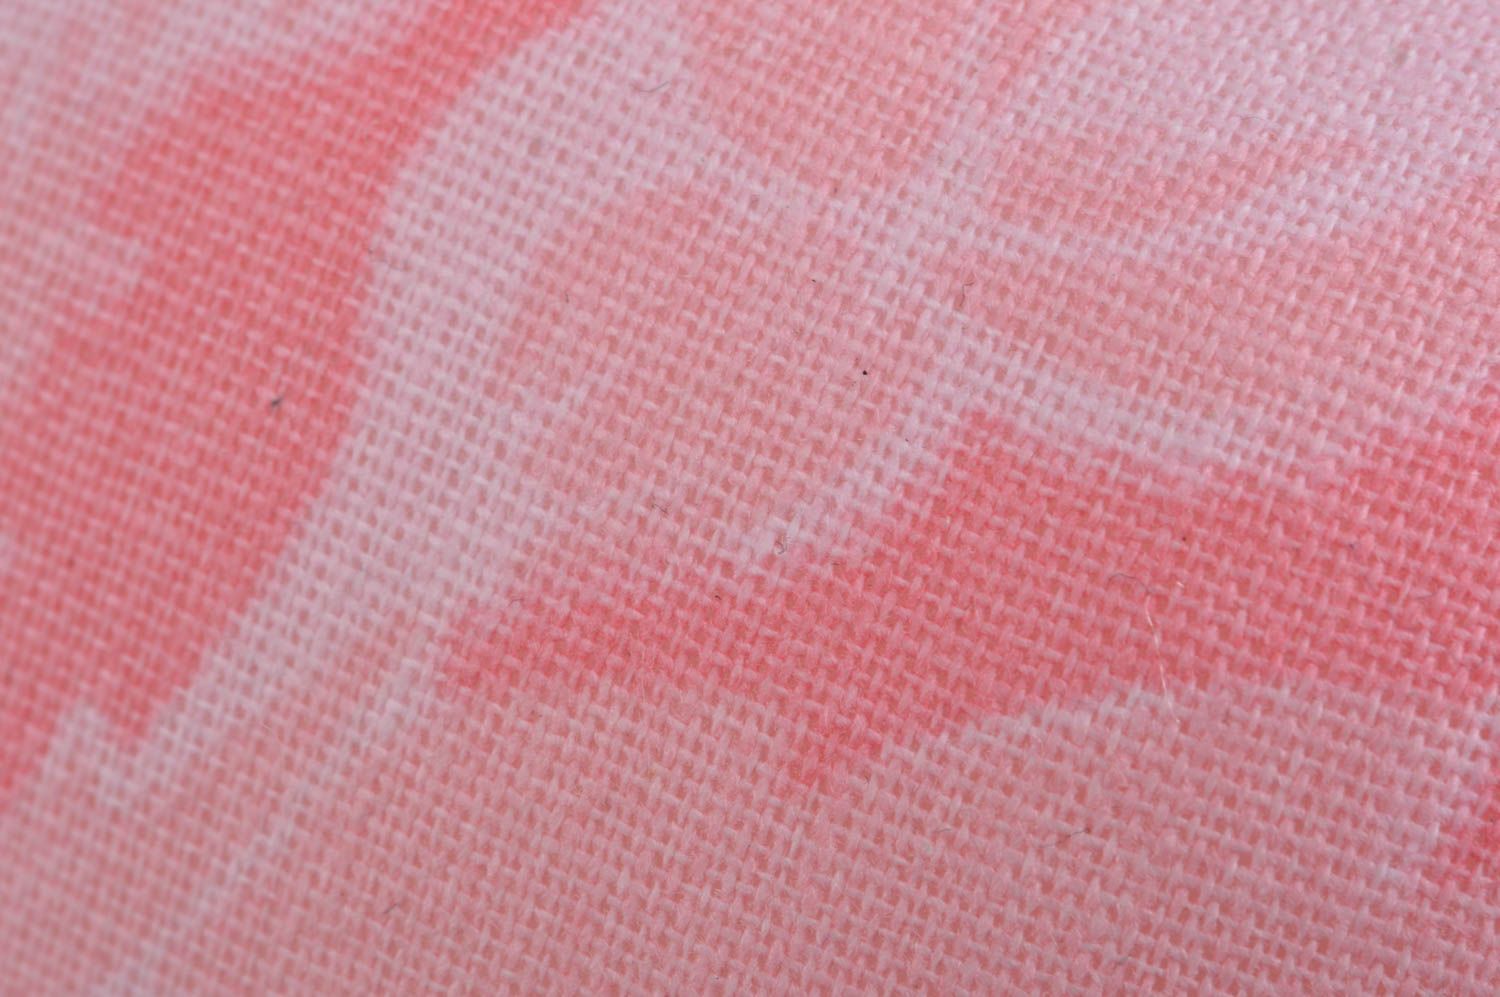 Тканевая игрушка в виде кошки небольшая розовая красивая милая ручной работы фото 5